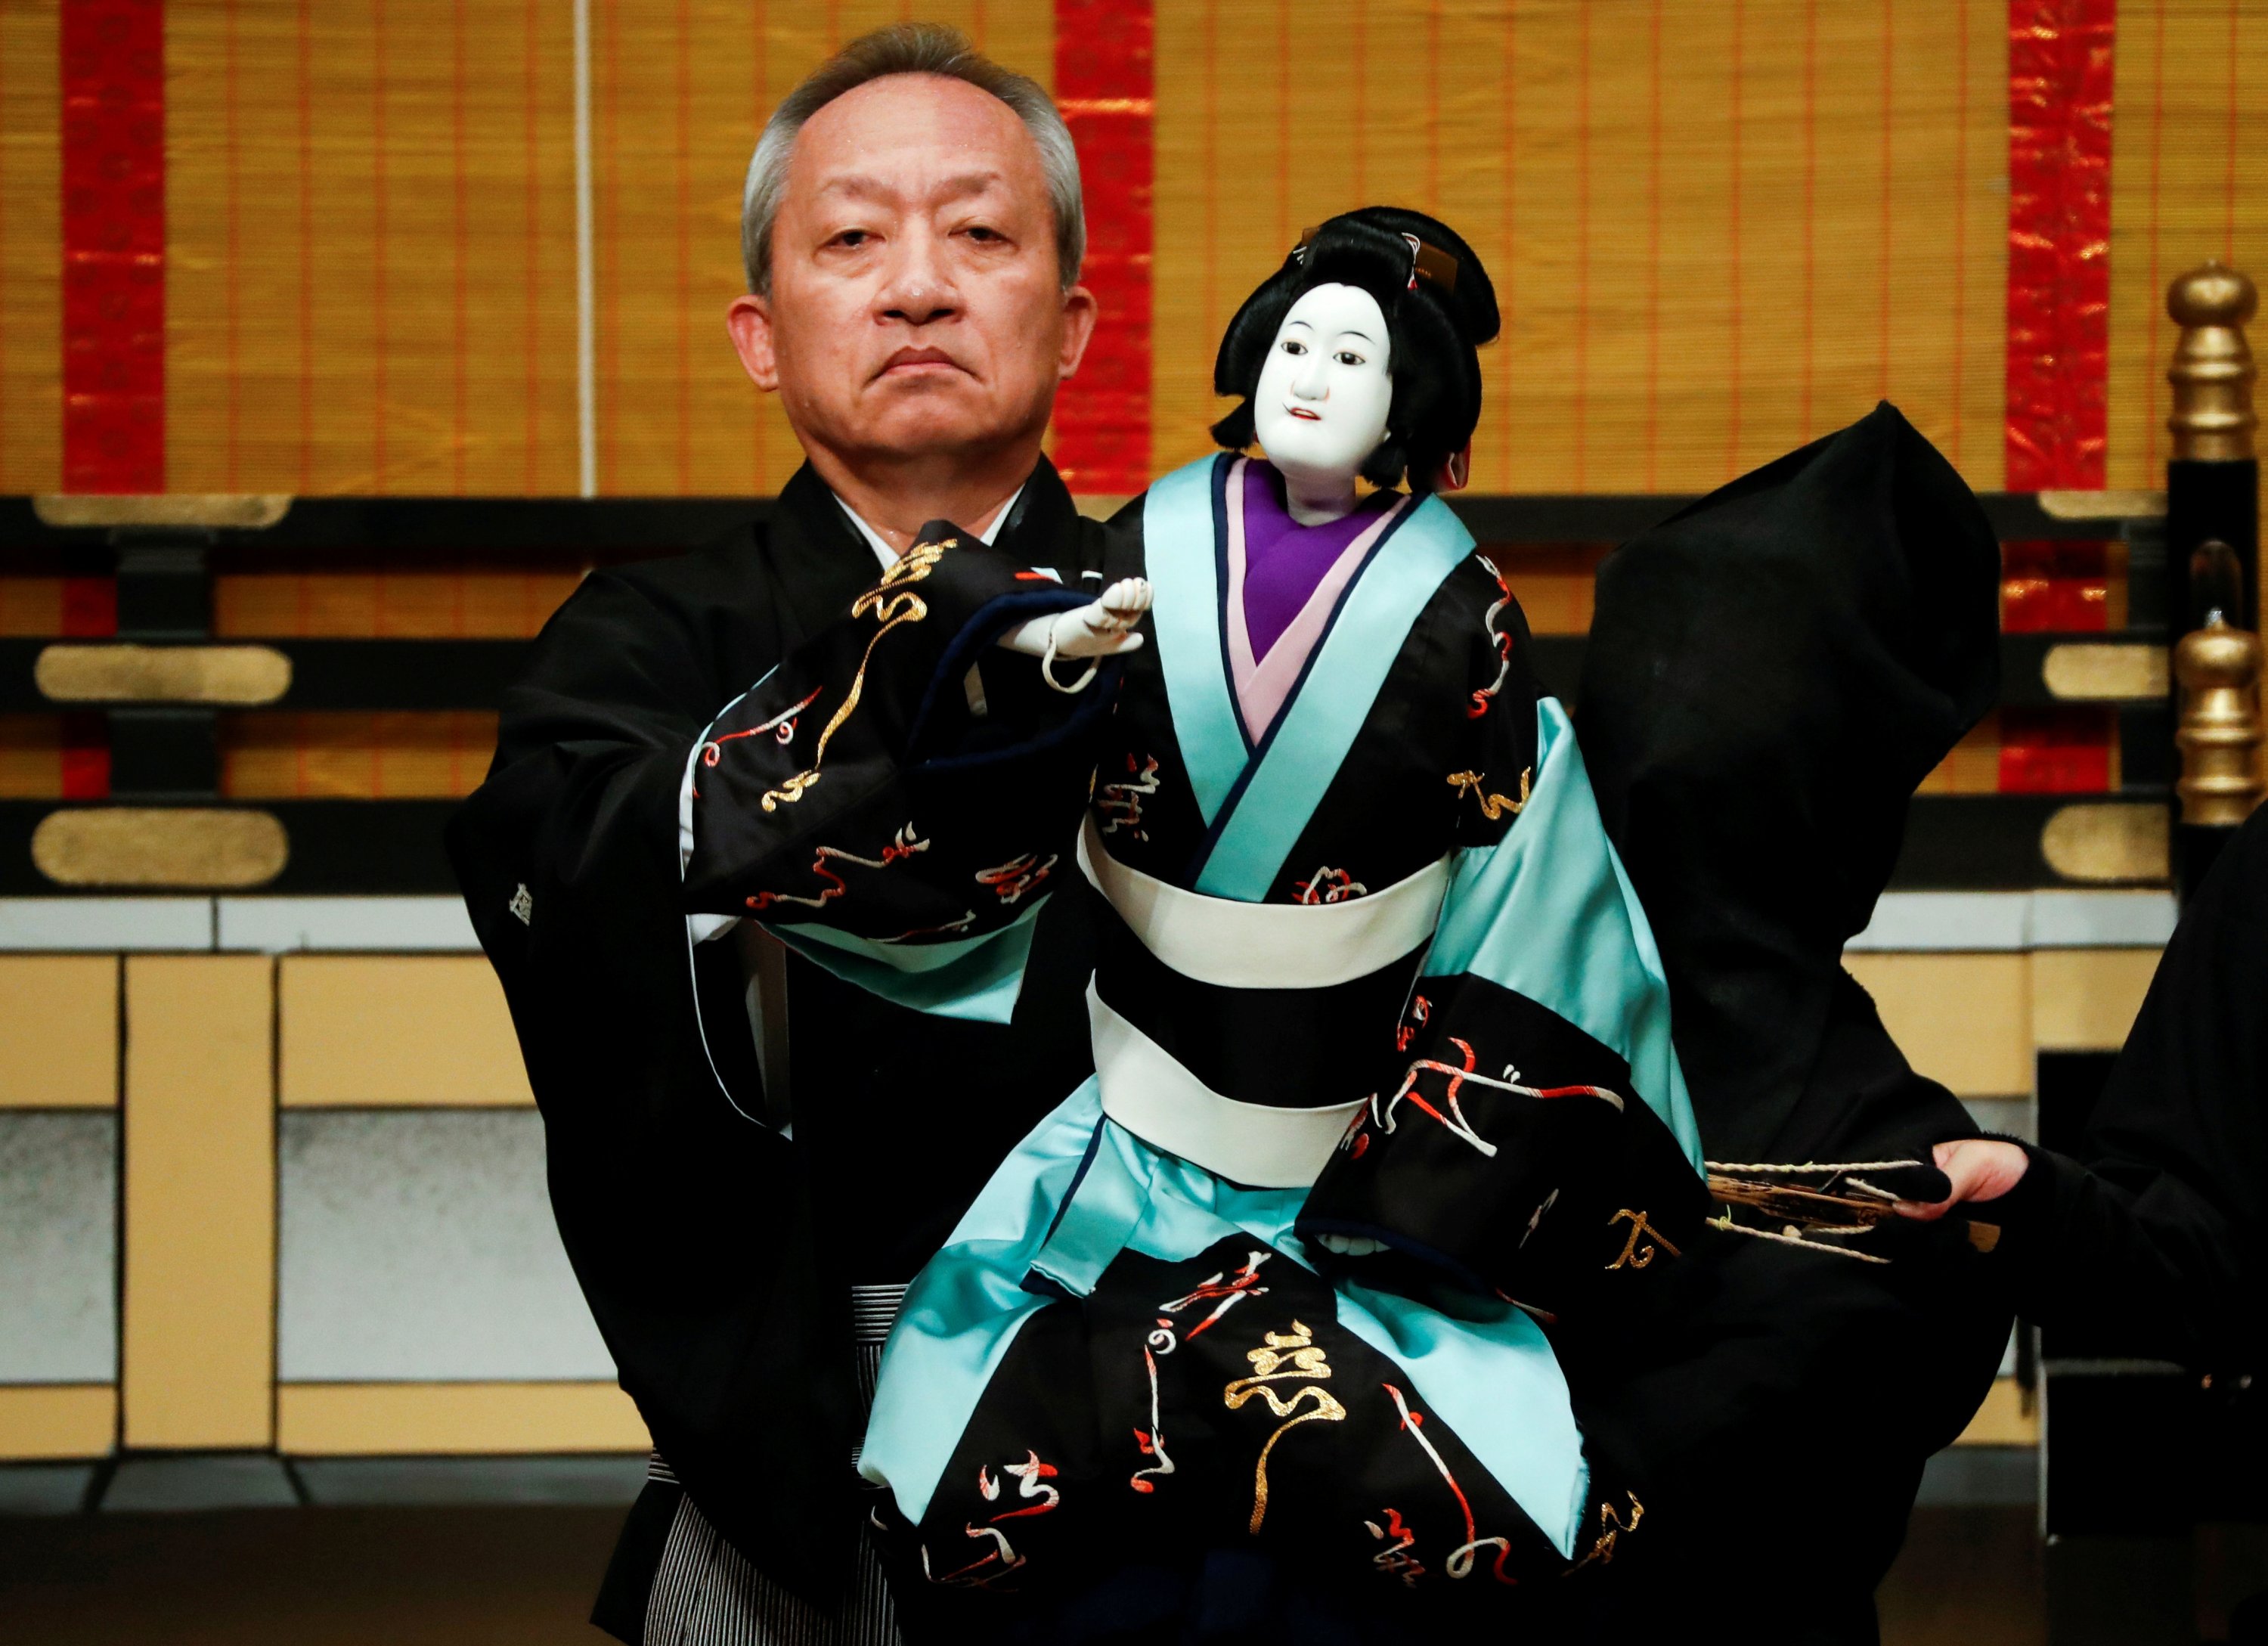 Kanjuro Kiritake performs Bunraku during the program "Komochi Yamanba" at the National Theatre in Tokyo, Japan, Sept. 7, 2020. (REUTERS PHOTO)